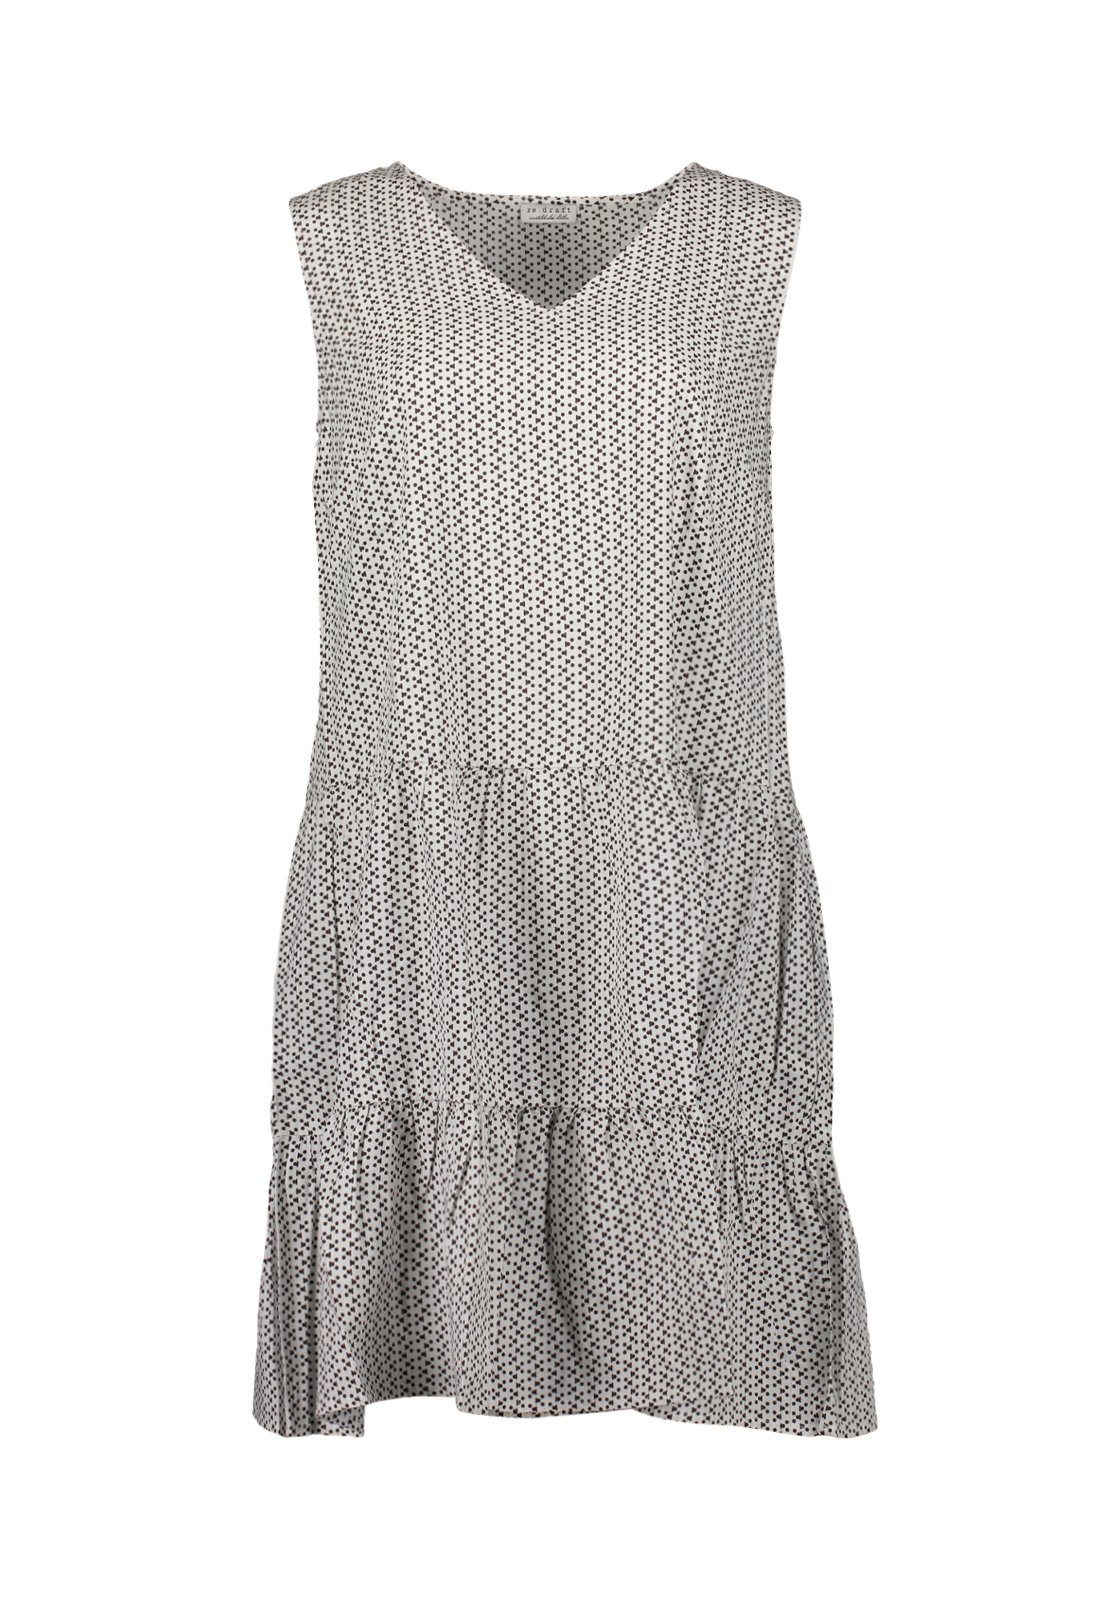 Sommerkleid kreideweiß Print Wool re.draft White-